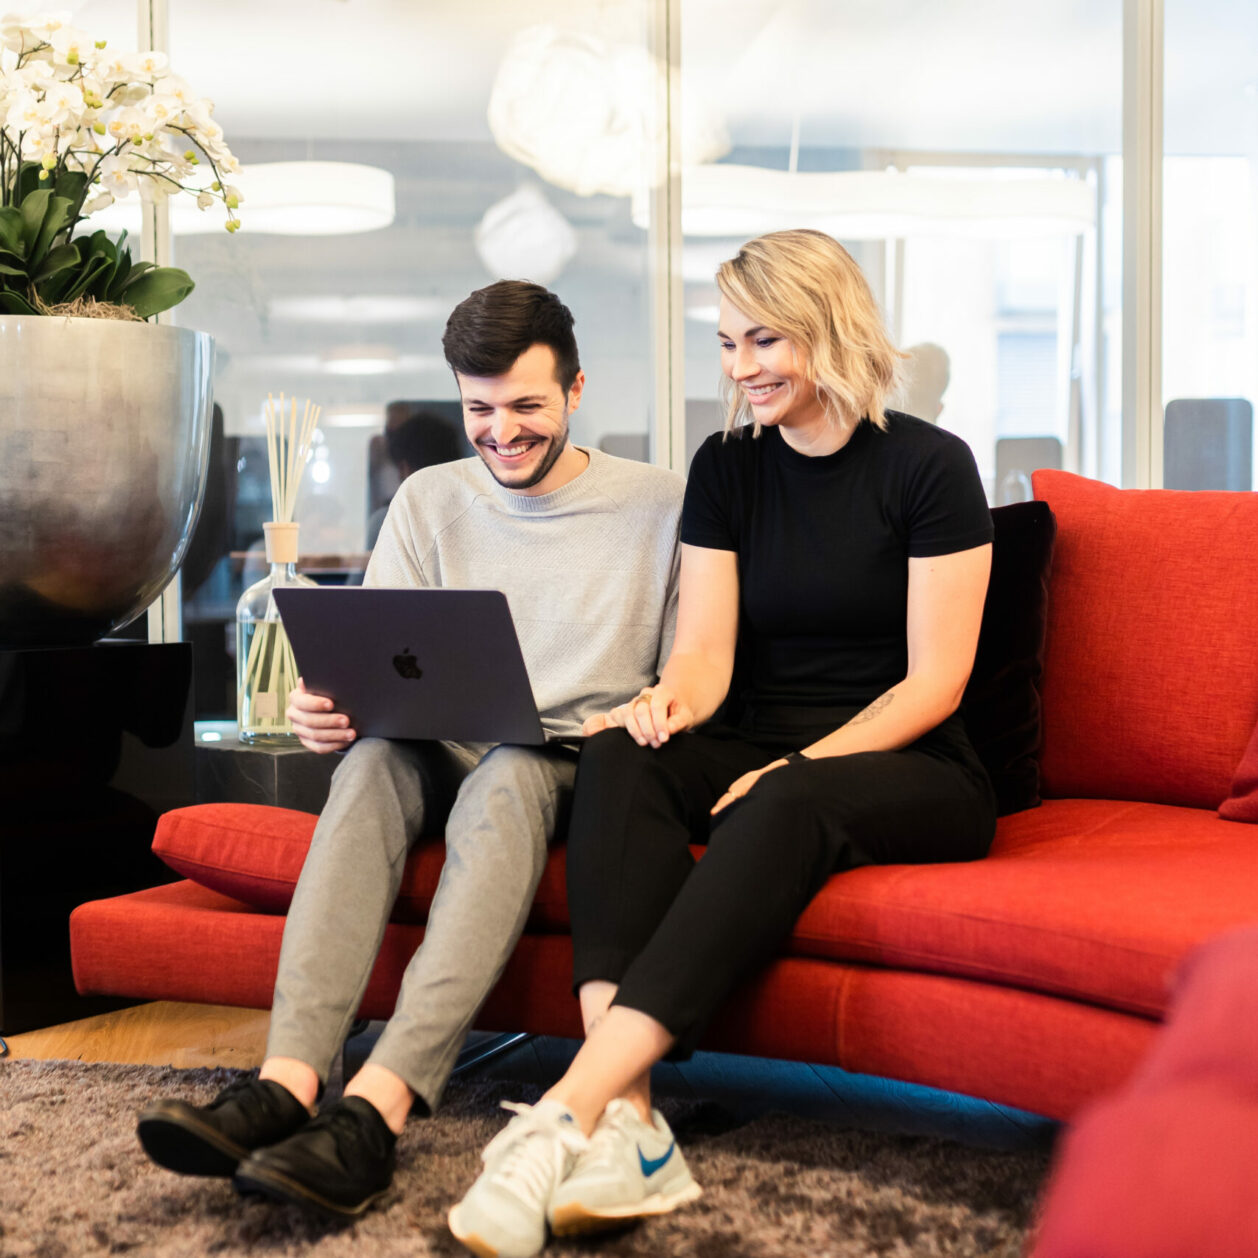 Zwei valantic-CX-Mitarbeiter*innen, die zusammen auf einem Sofa sitzen und in ein Customer-Experience-Präsentation an einem Laptop anschauen.